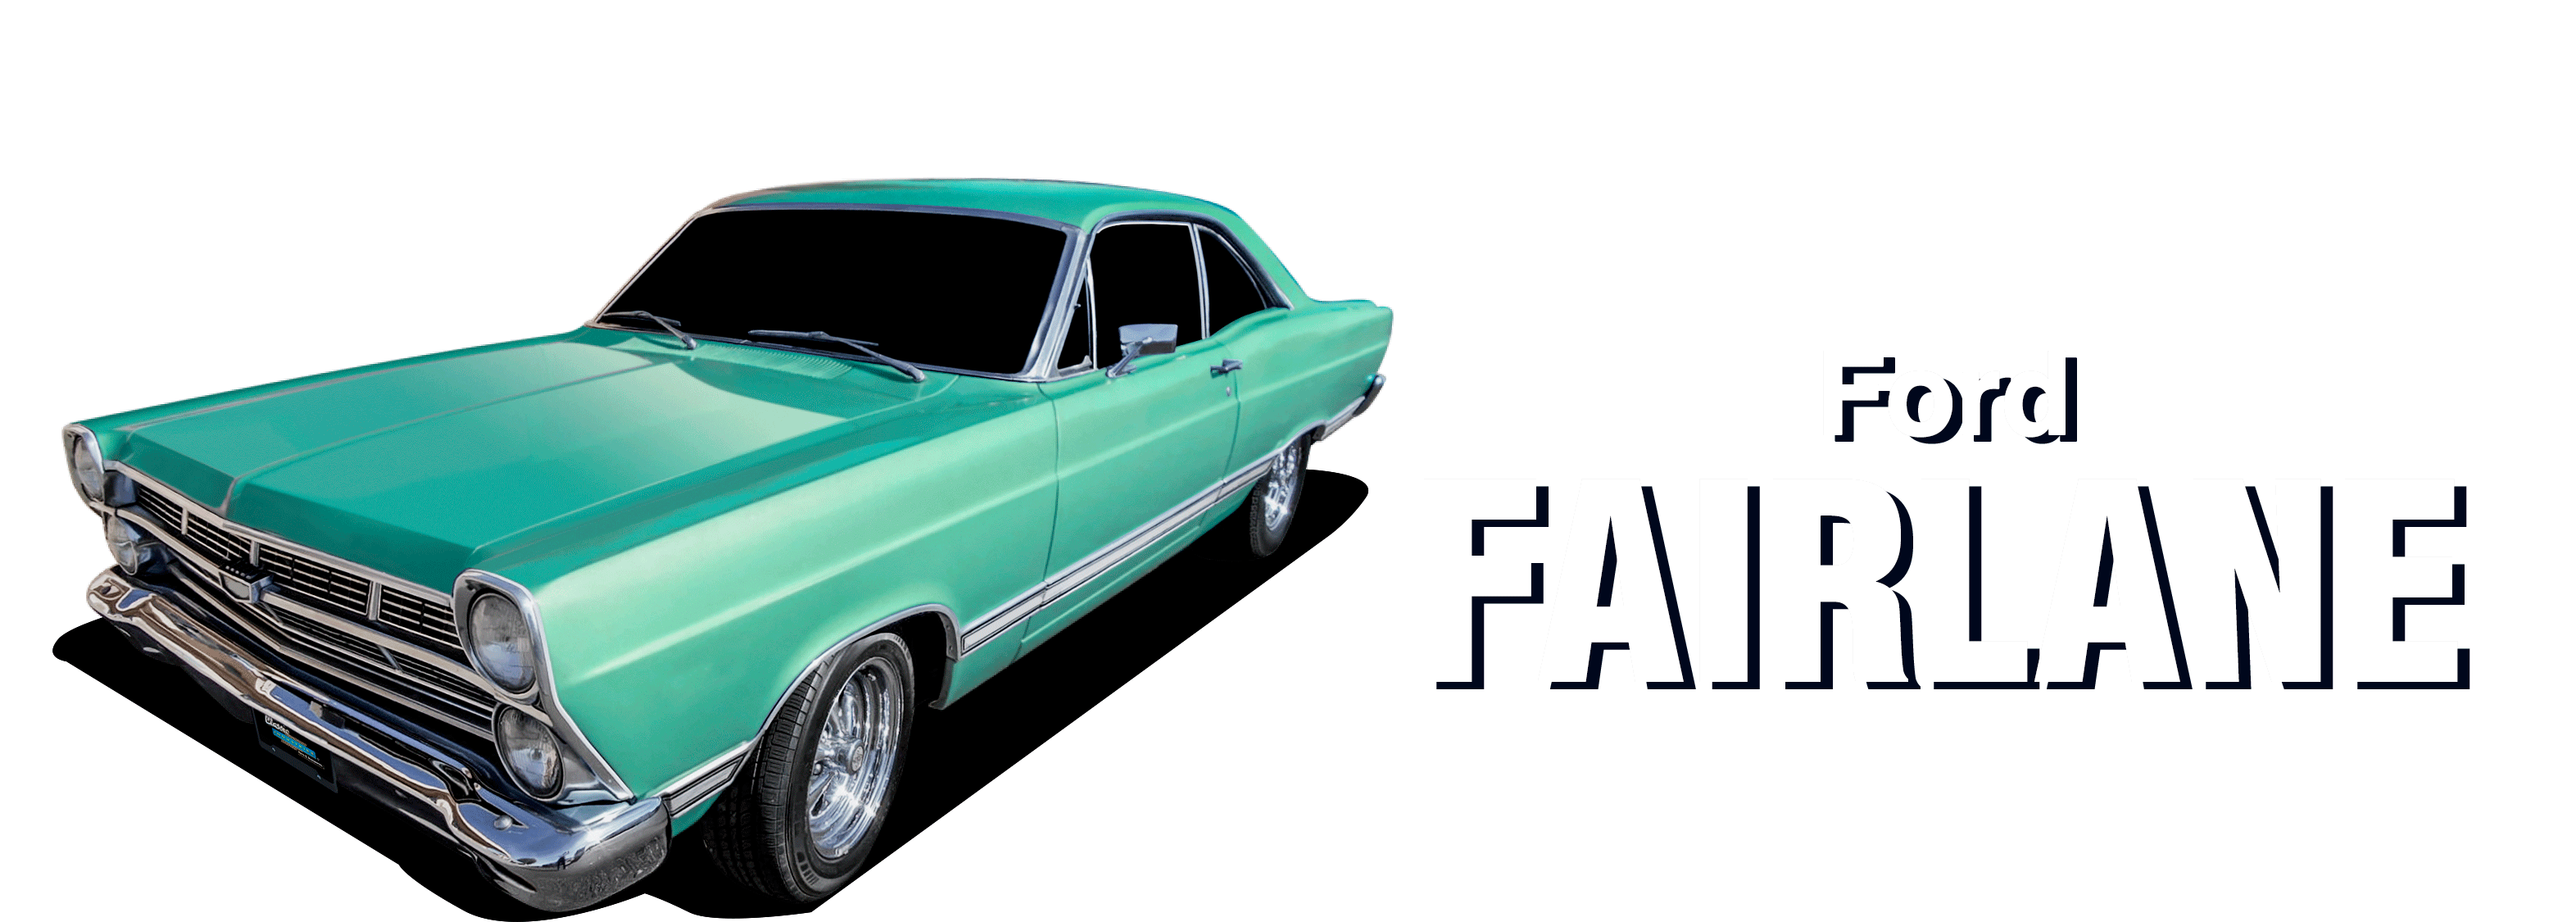 Ford-Fairlane-vehicle-desktop_2023-V2